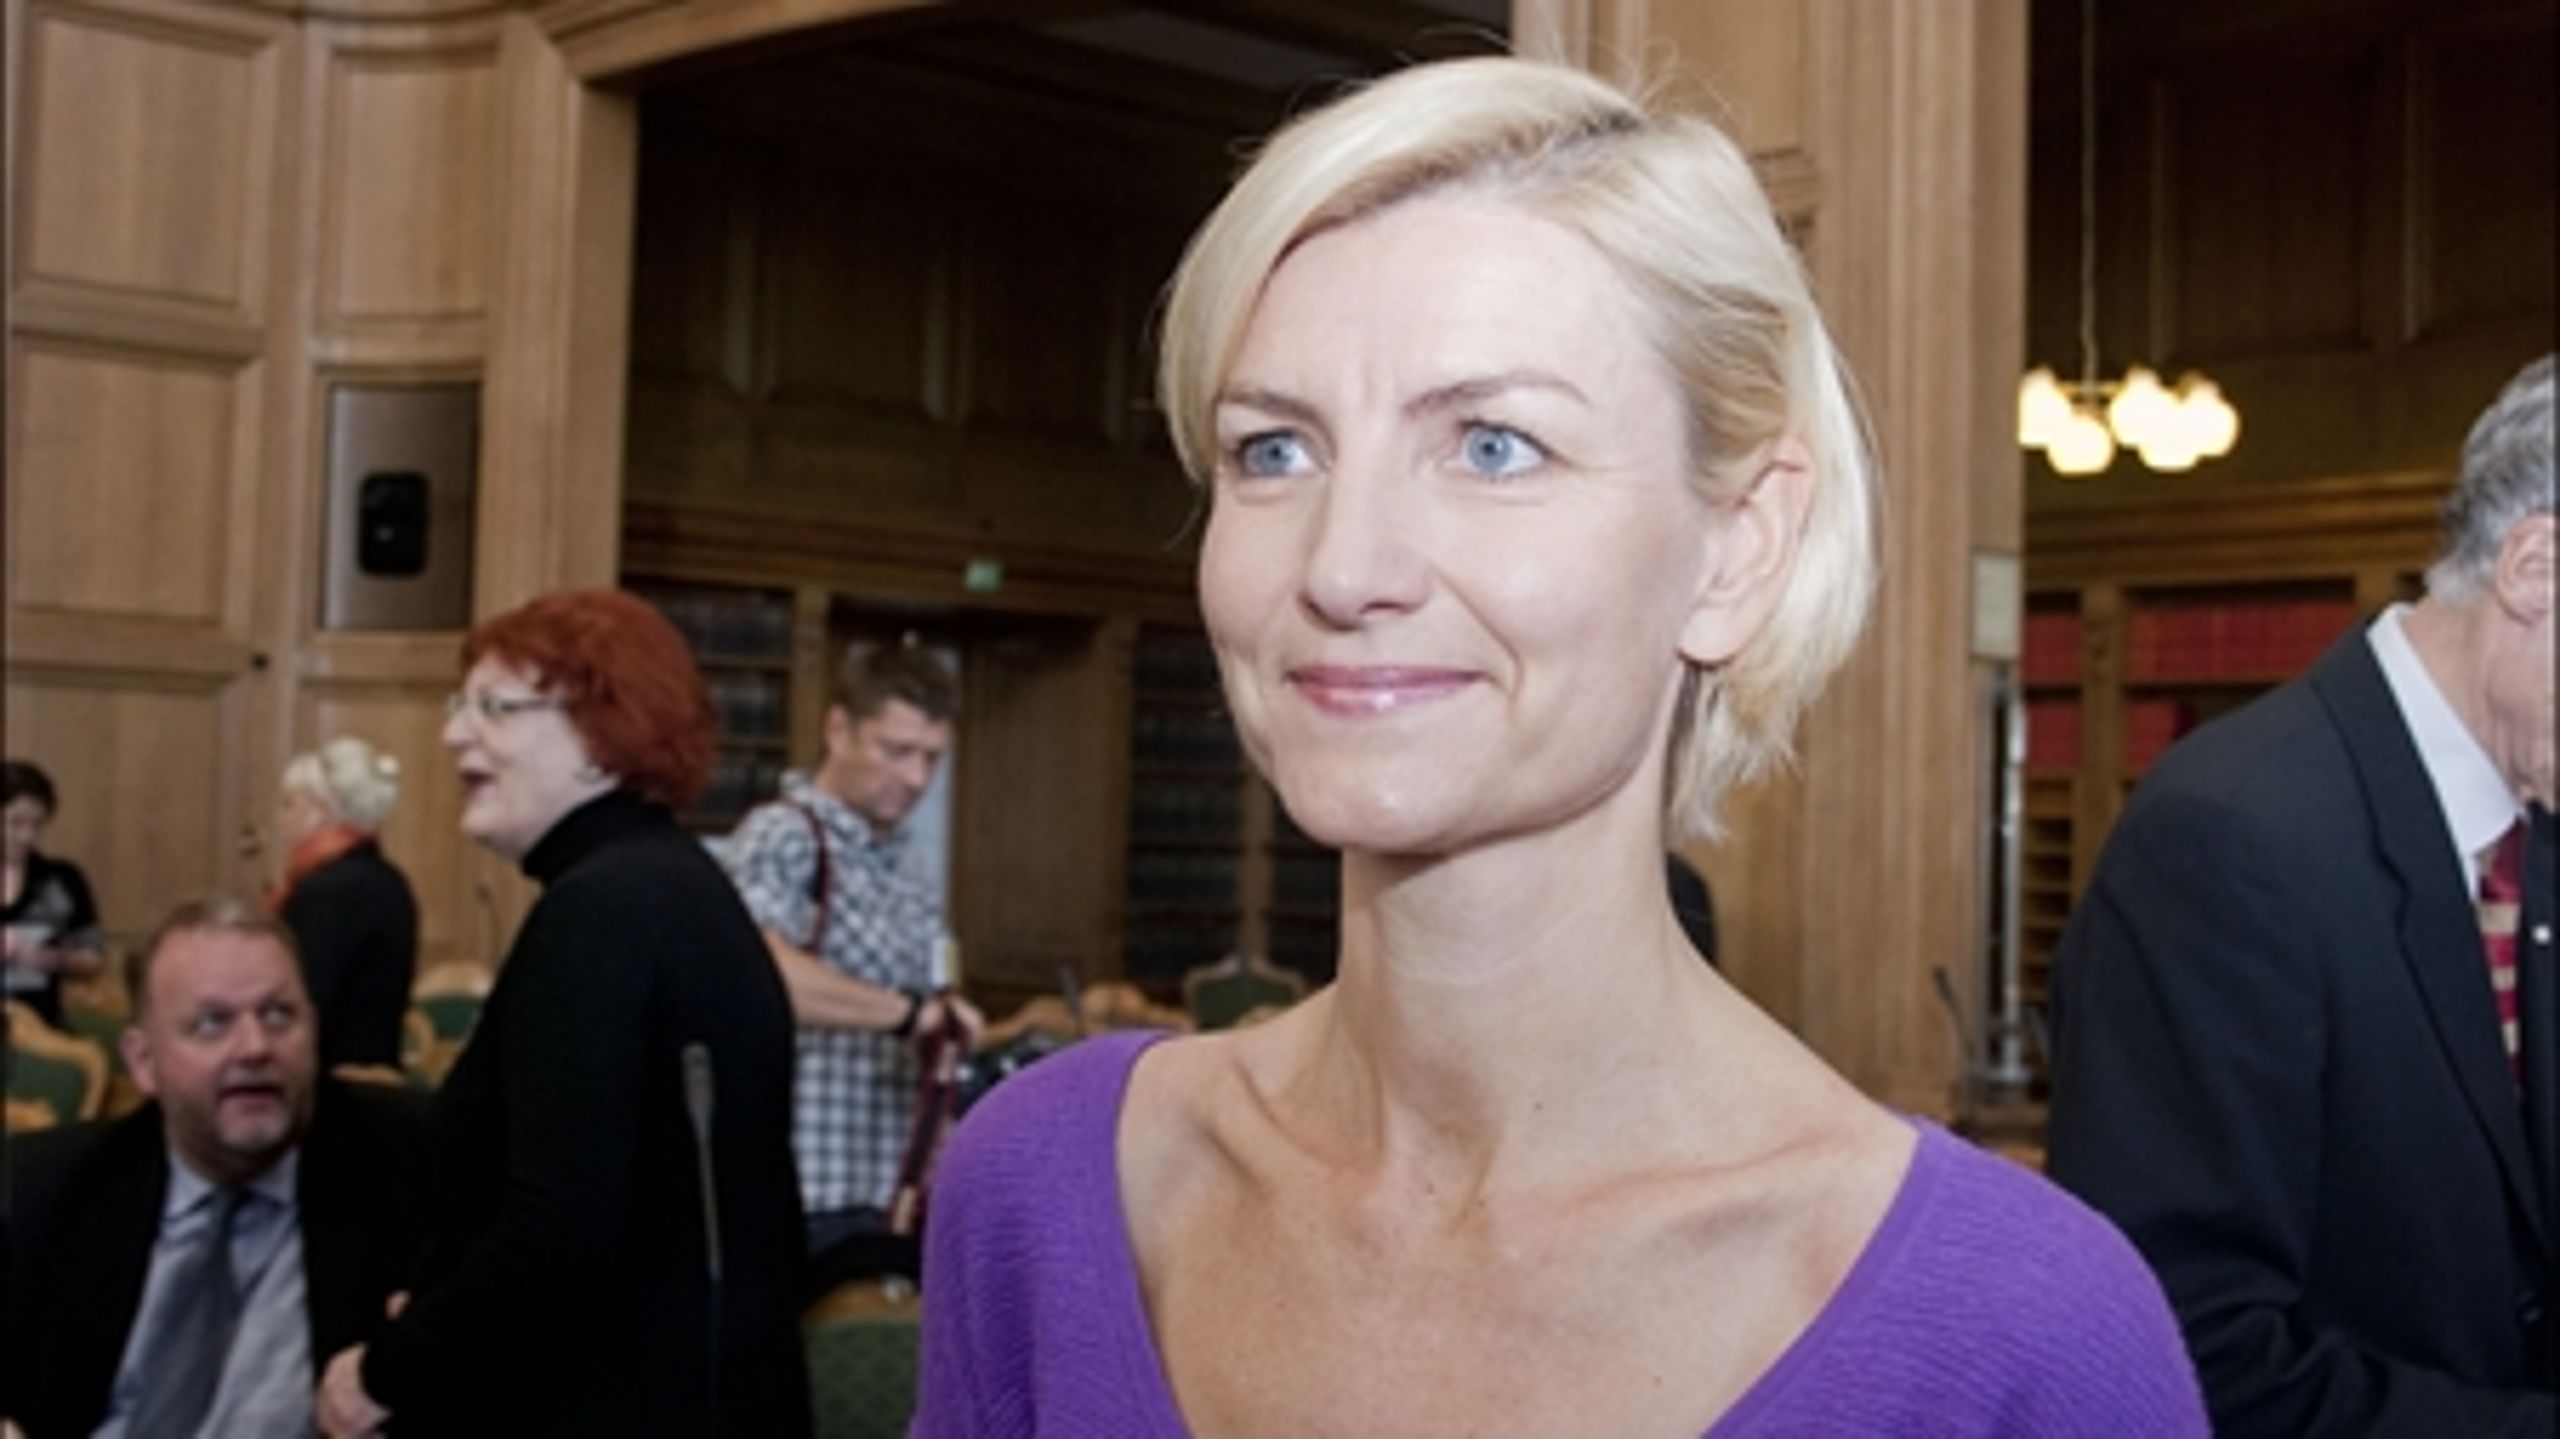 Venstres arbejdsmarkedsordfører Ulla Tørnæs er blandt de ordførere, der ser ud til at være sikre på at beholde pladsen i Folketinget efter næste valg. Kun Helle Sjelle skal ikke føle sig for sikker.